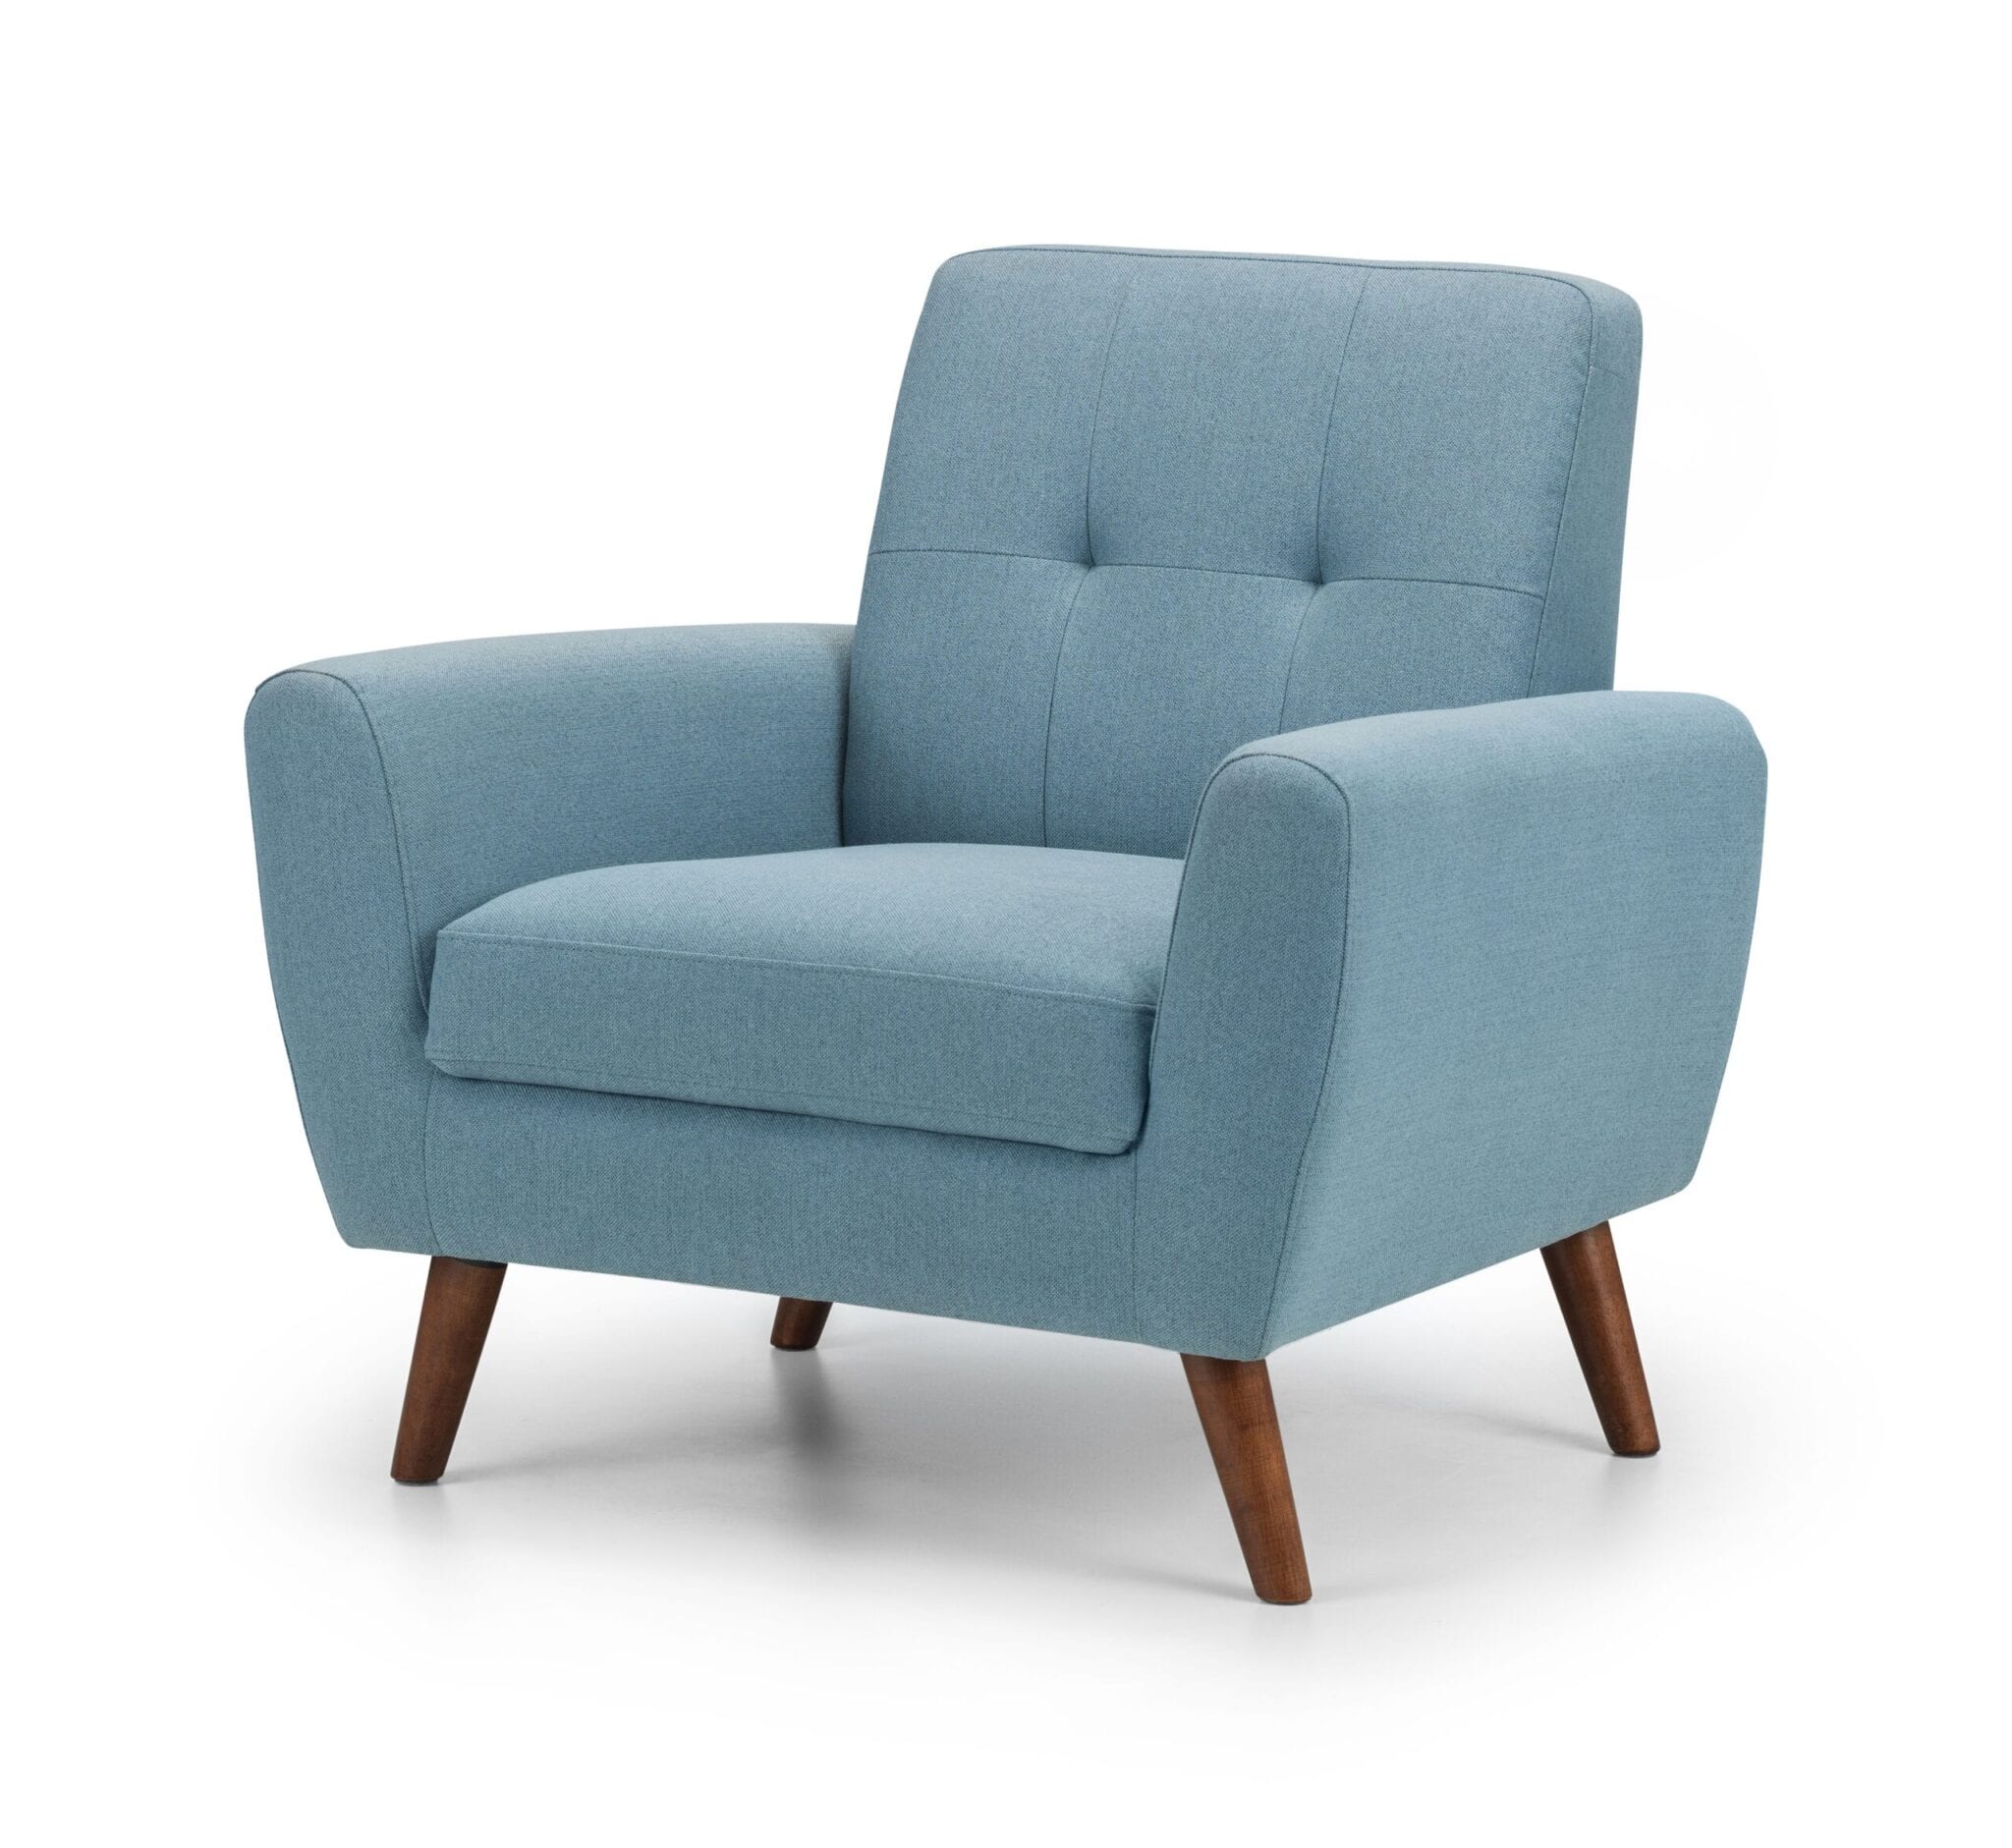 Honcho Compact Chair - Blue